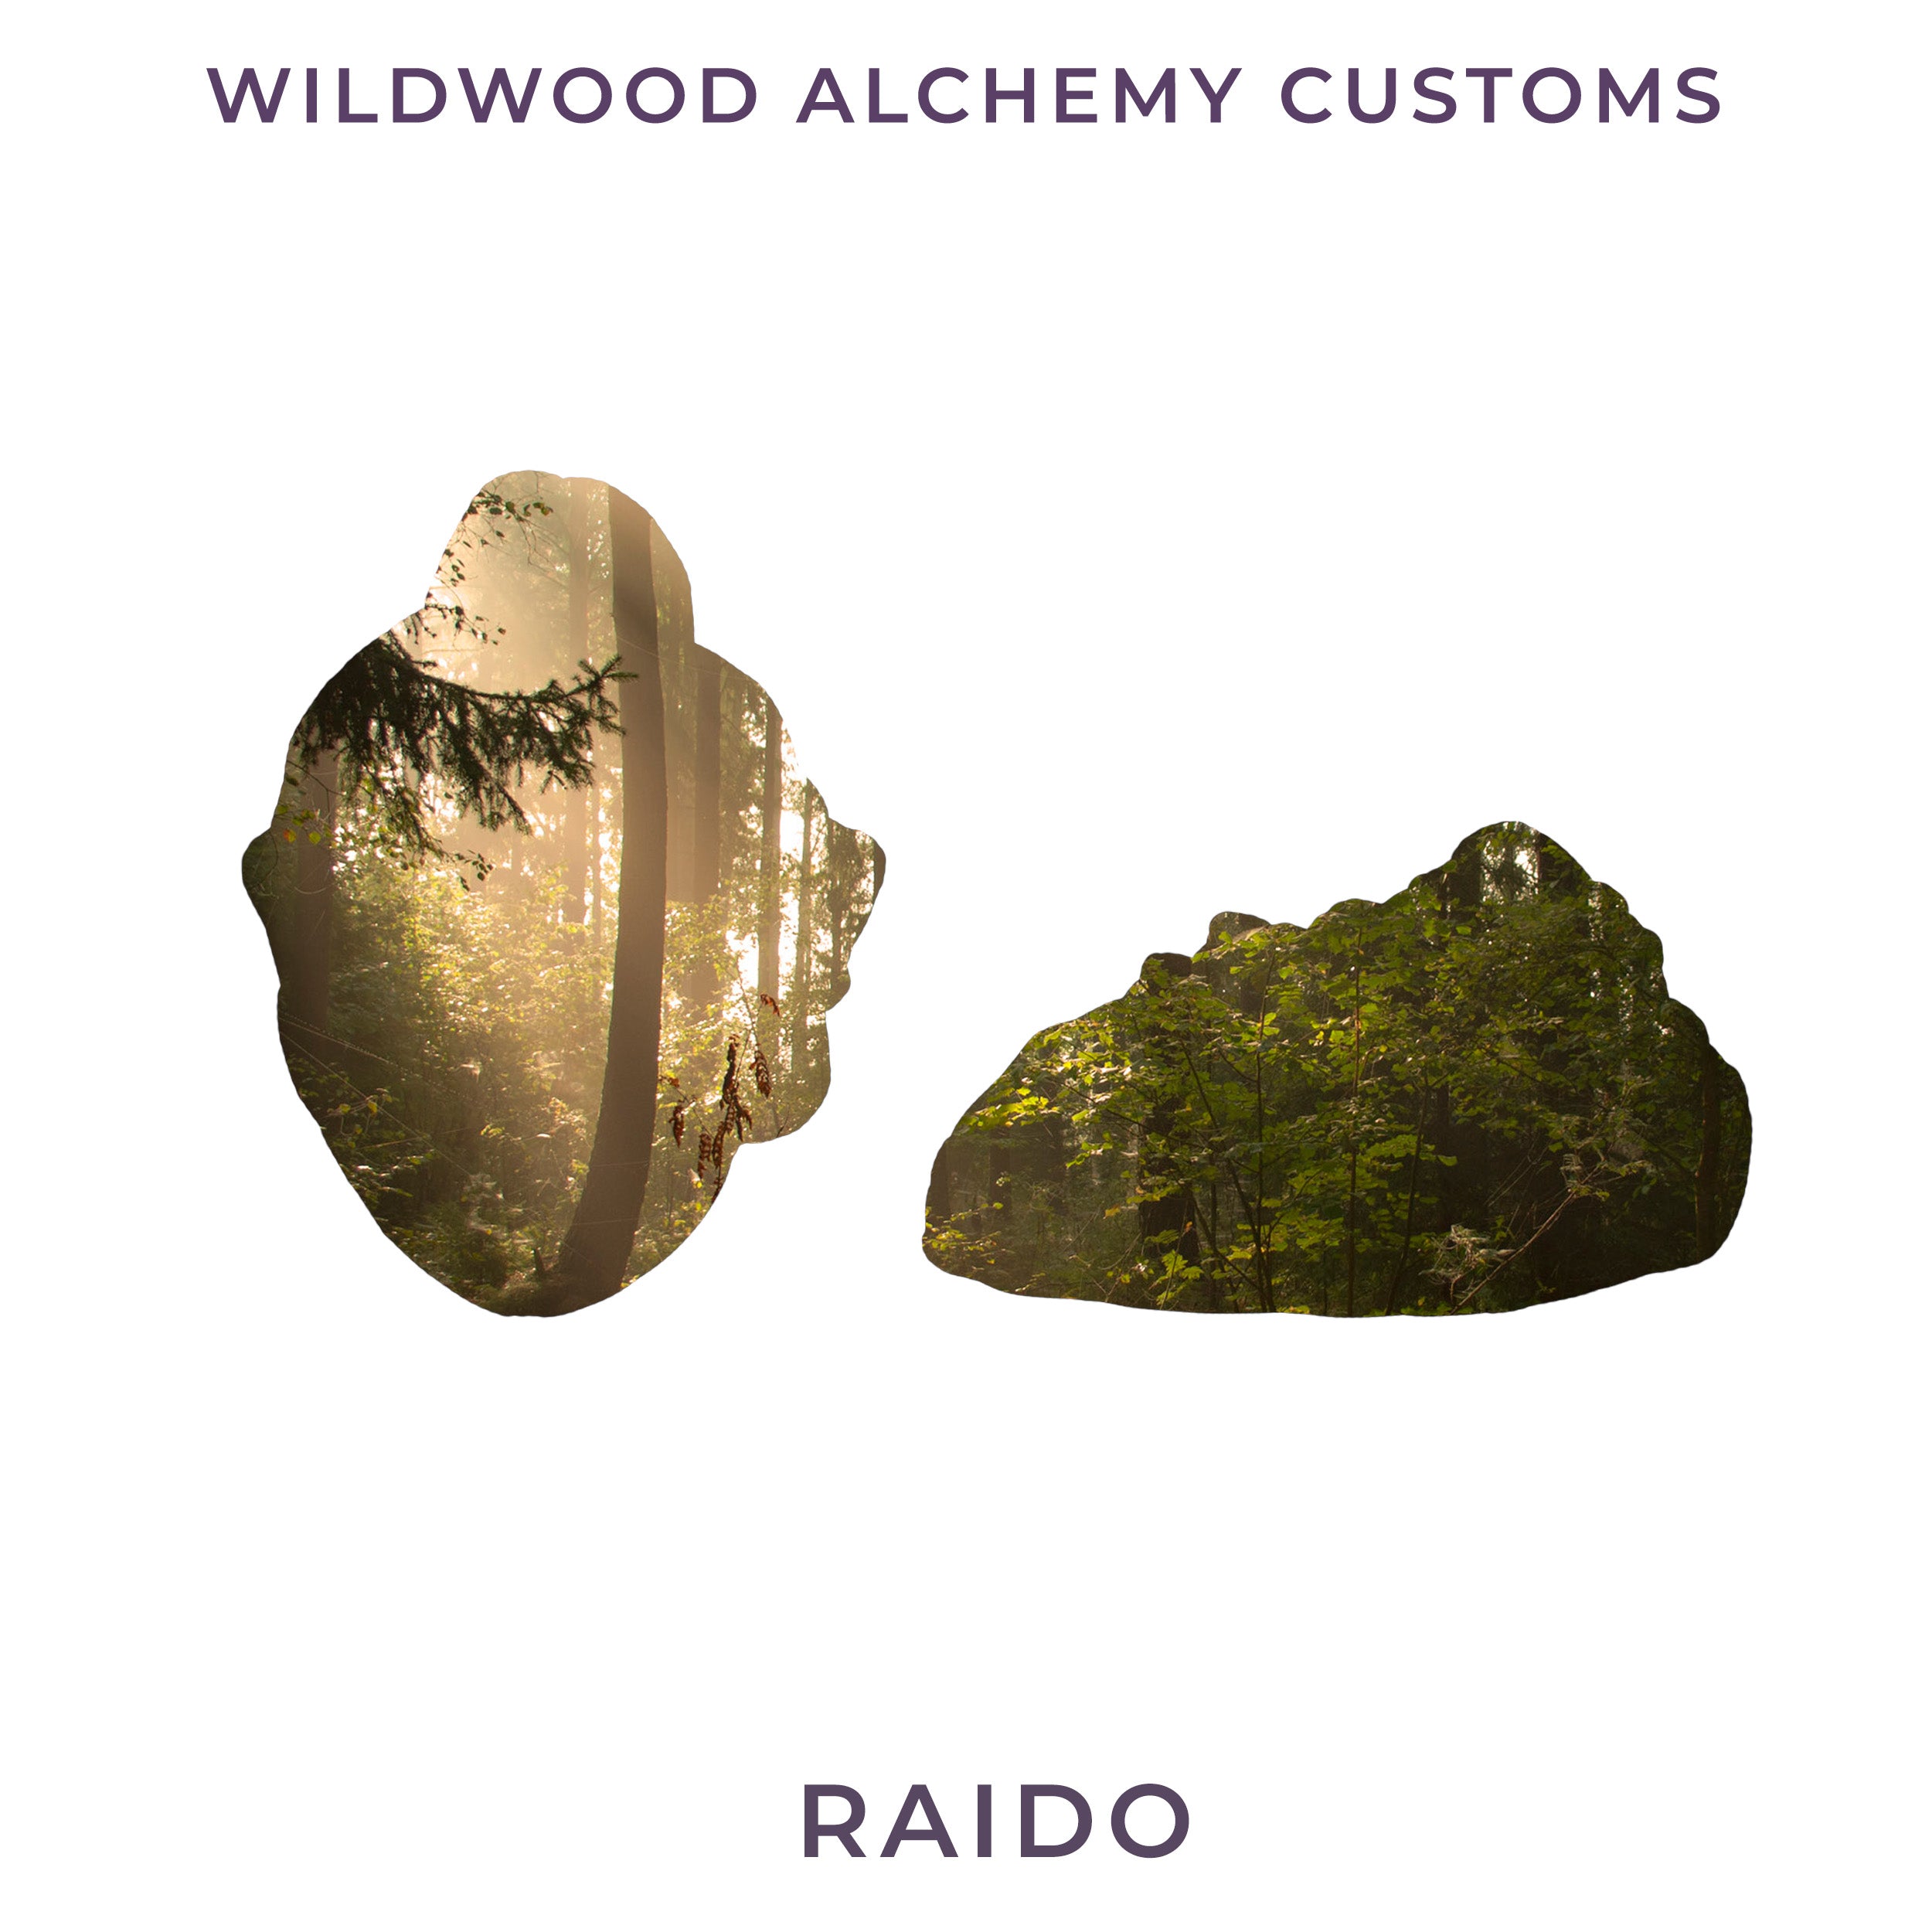 Wildwood Alchemy Custom Raido